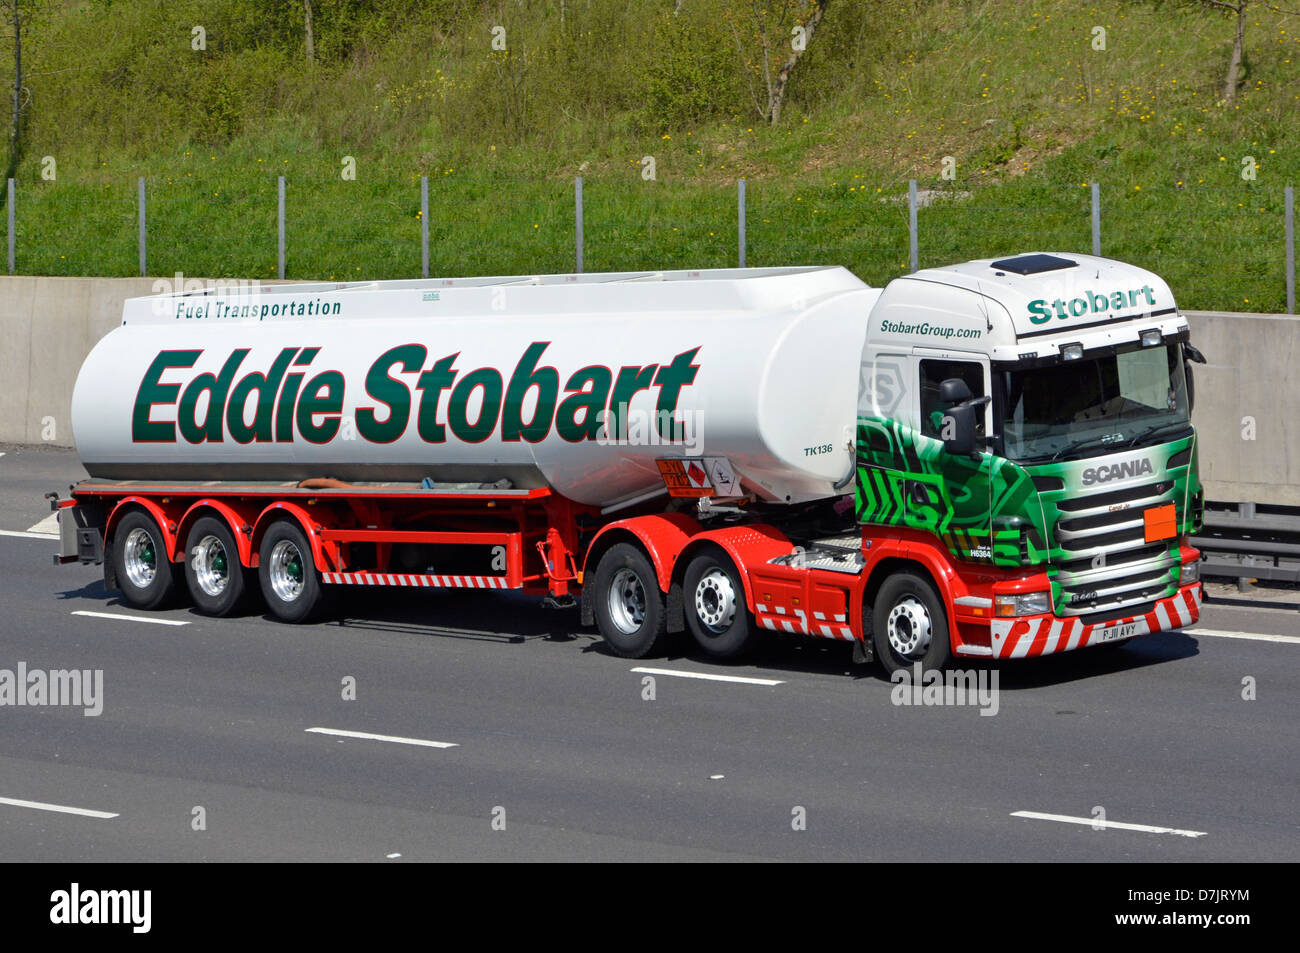 Benzintanker Knickgelenkwagen und lkw-Transportfahrzeug Scania LKW,  betrieben von Spediteur Eddie Stobart, der auf der M25 London Orbital  Highway Road UK fährt Stockfotografie - Alamy